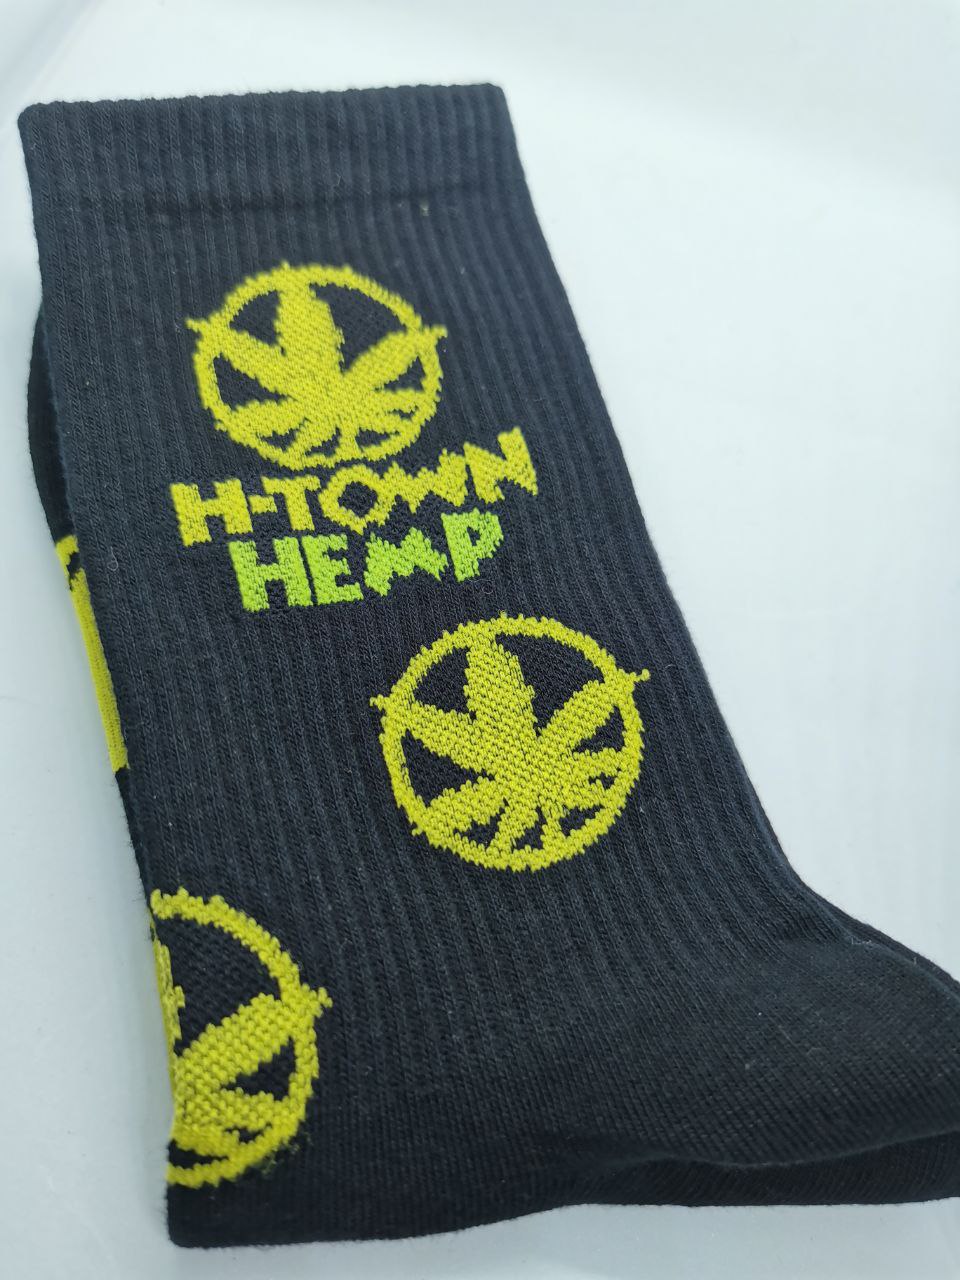 H town Cotton socks (Leaf design)